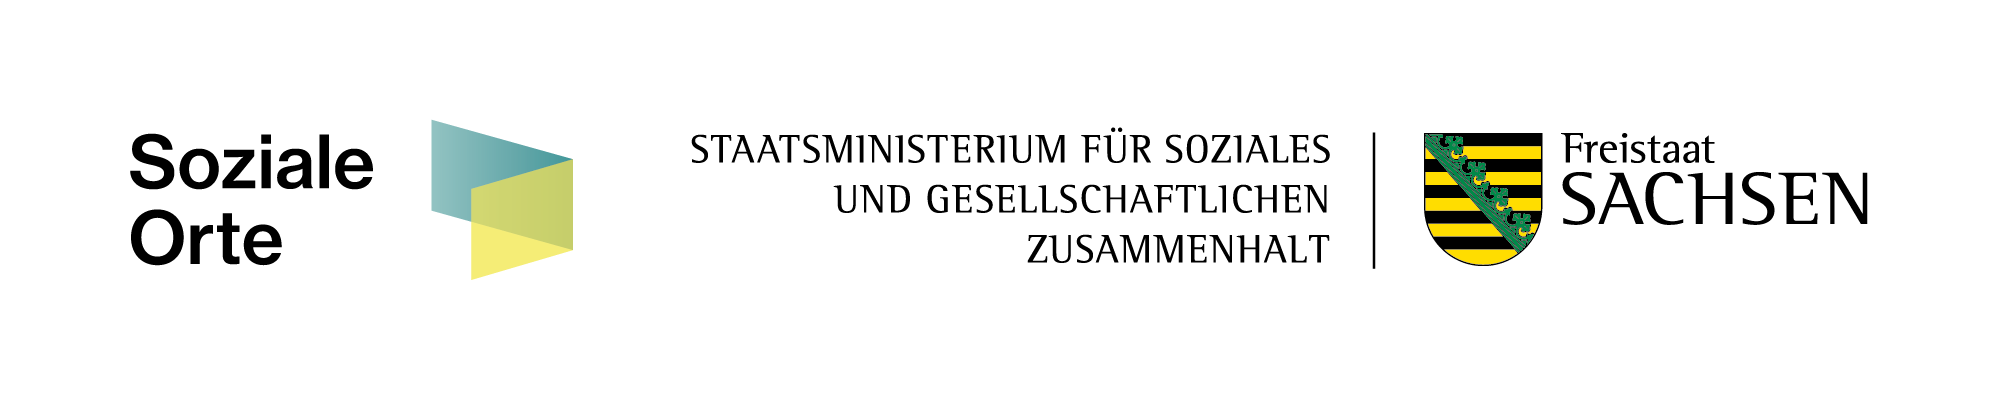 Logo SMS SO 211001